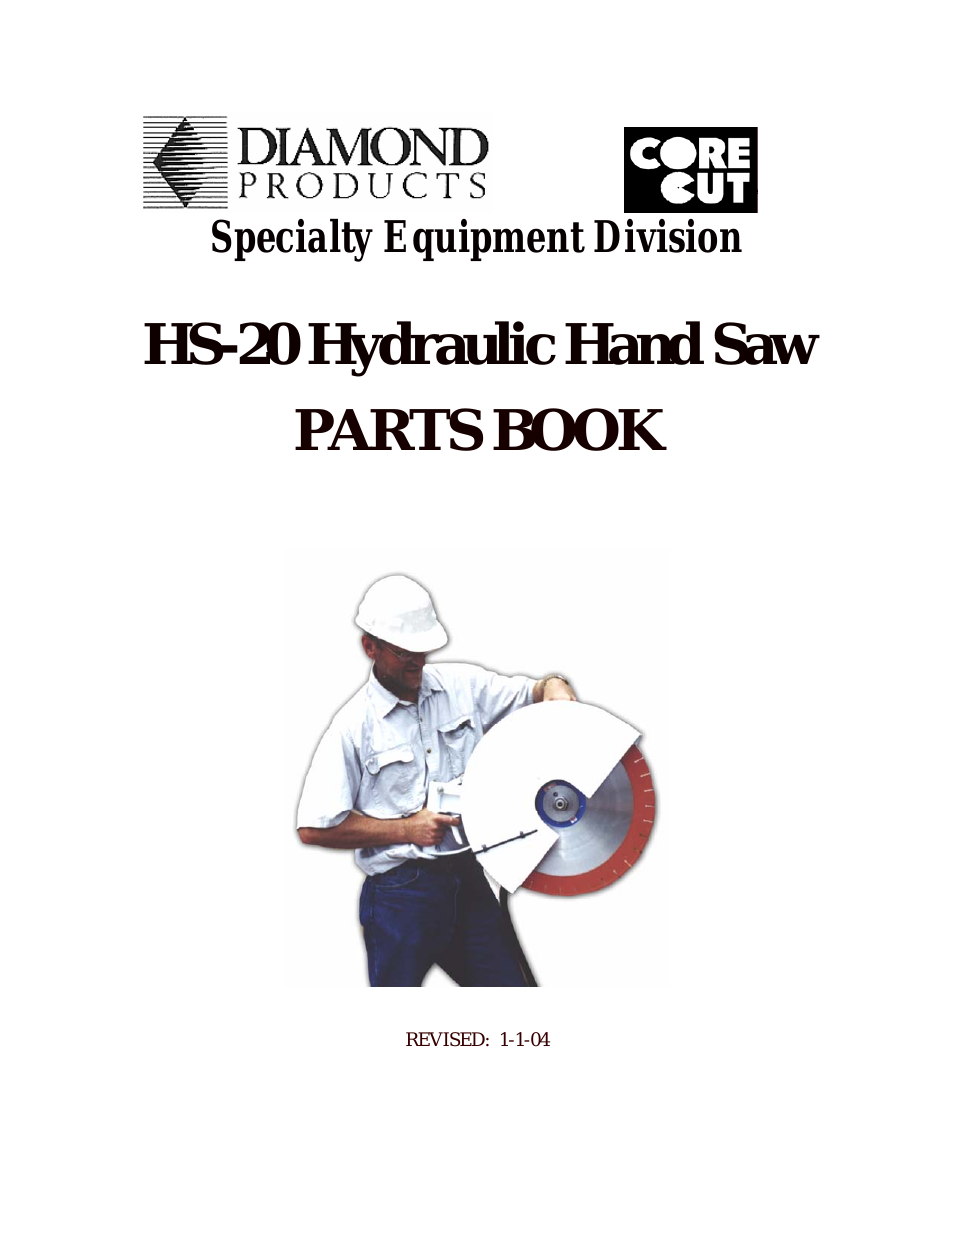 Hydraulic Hand Saw HS-20